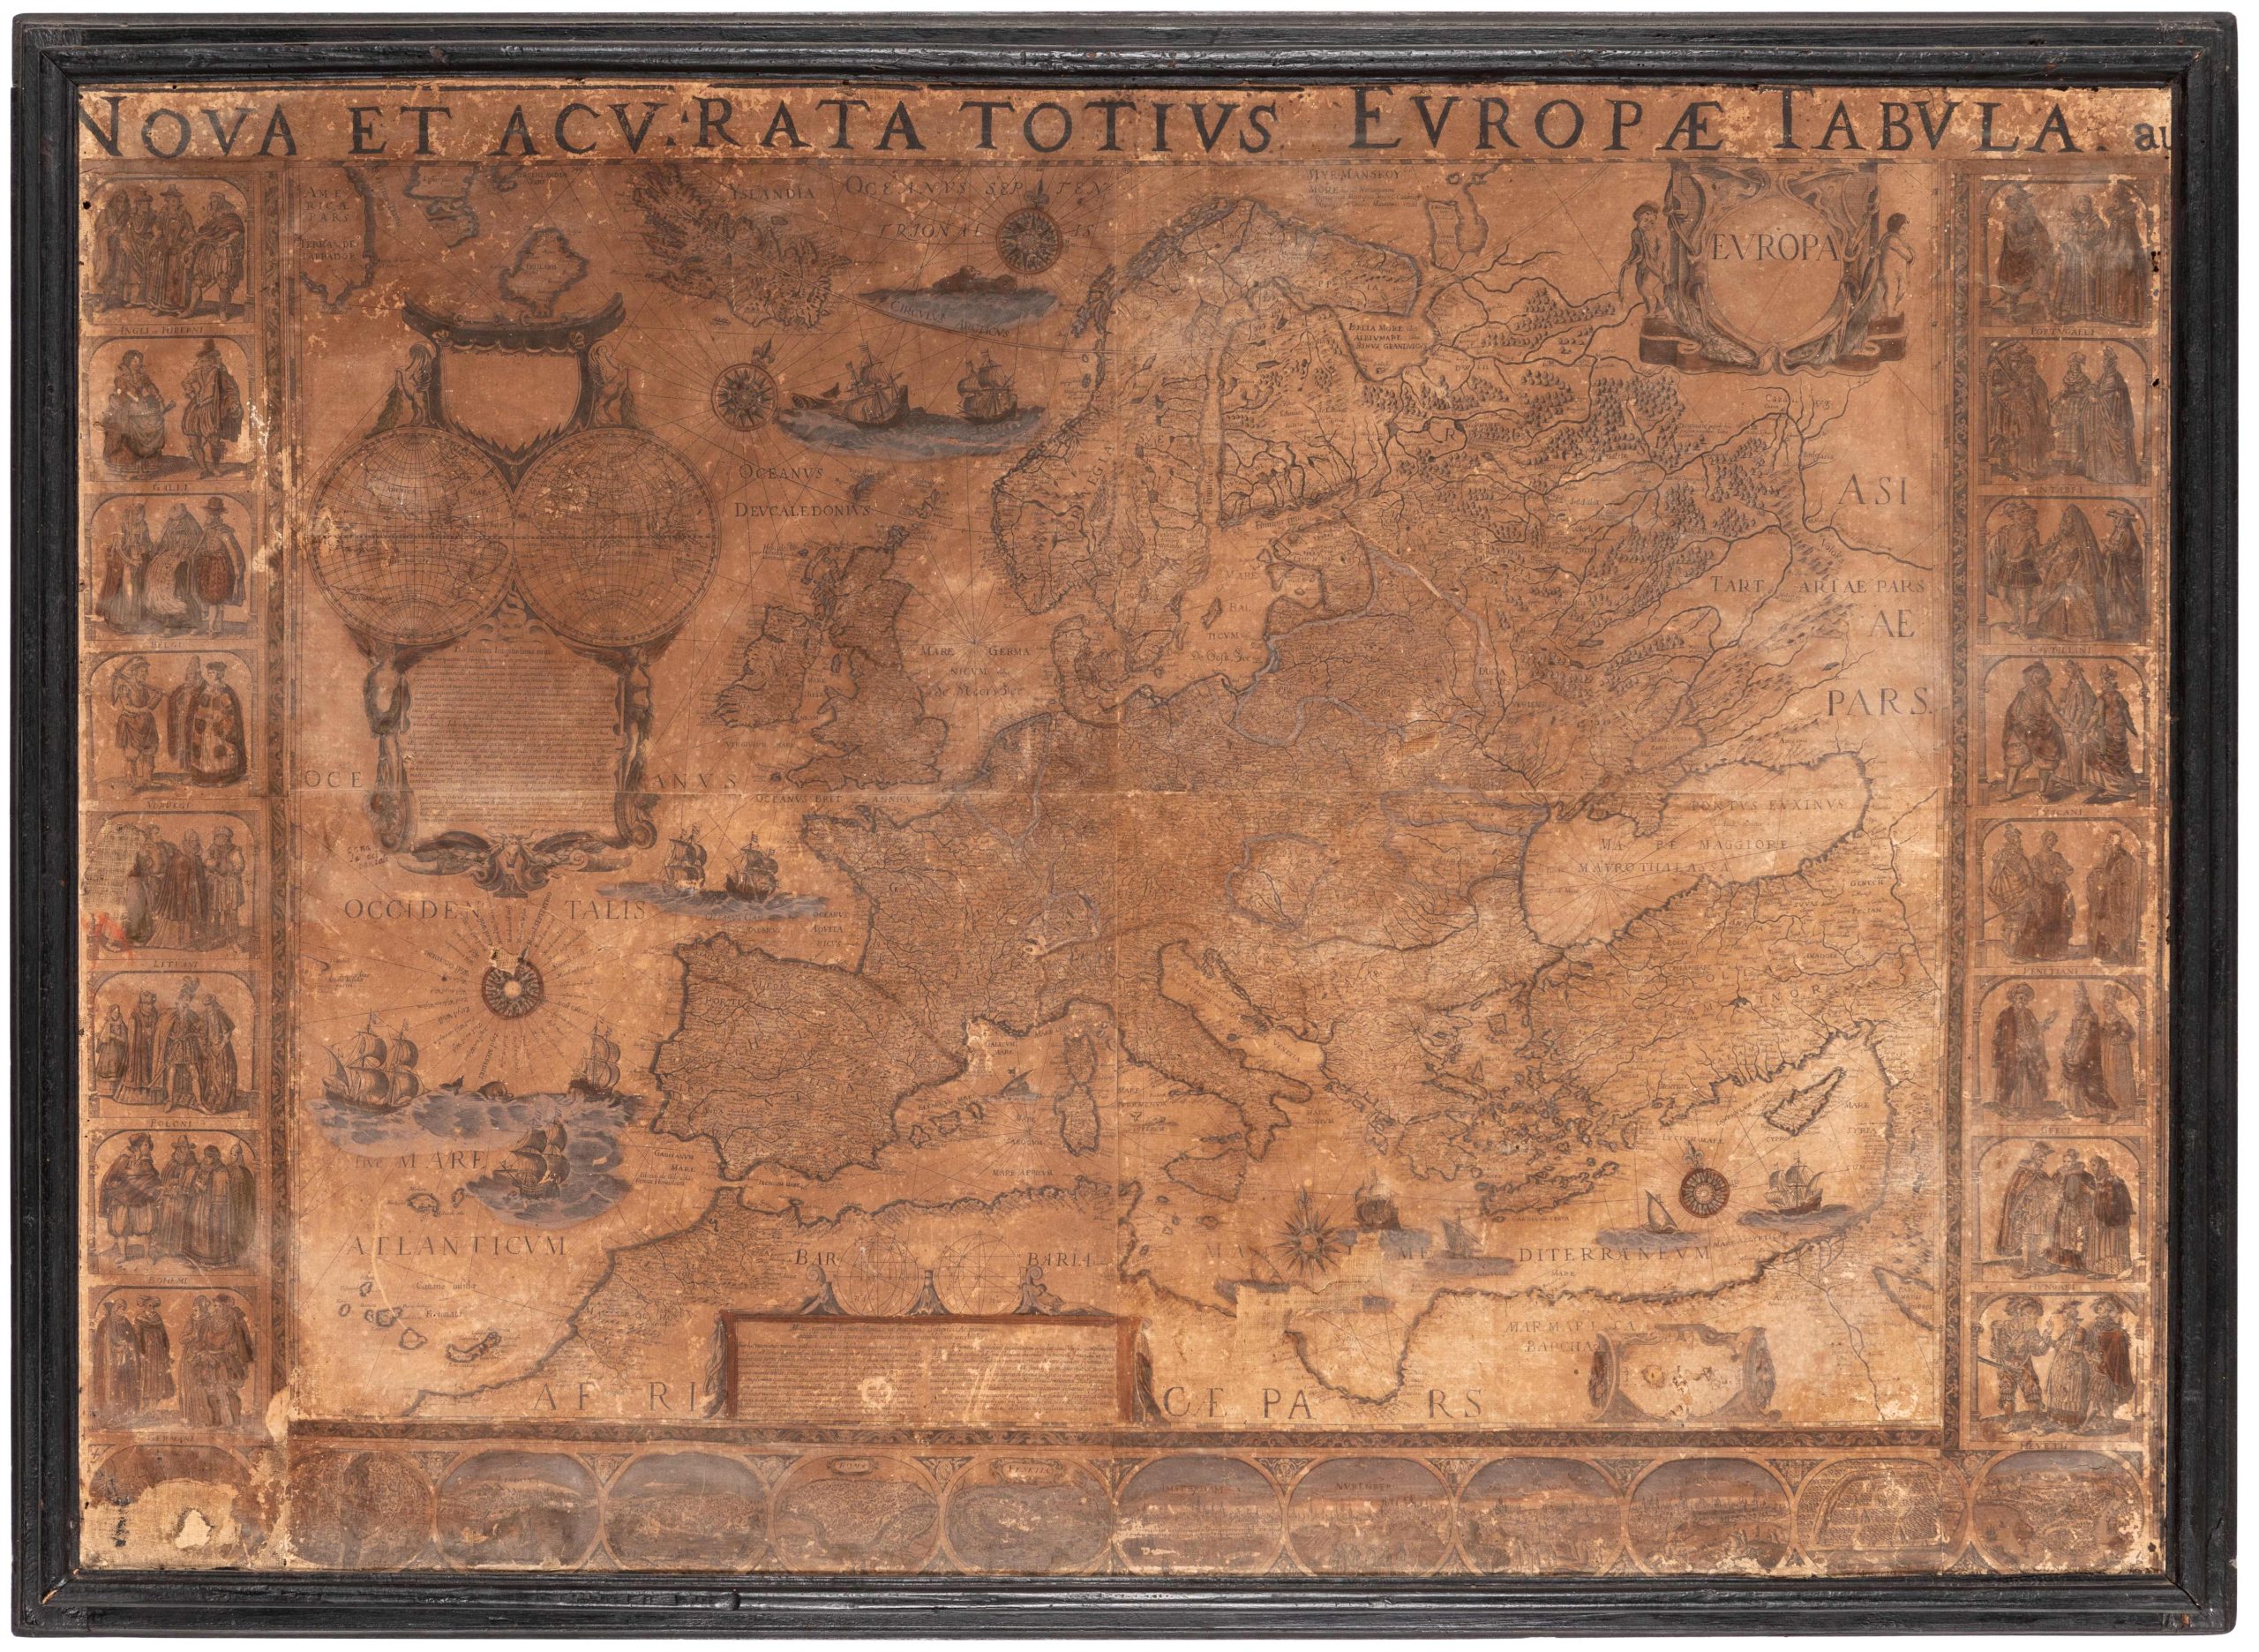 Oltre 400 mila euro per i Libri e Manoscritti di Wannenes, top lot assoluto il raro set completo delle mappe dei quattro continenti di Willem Blaeu